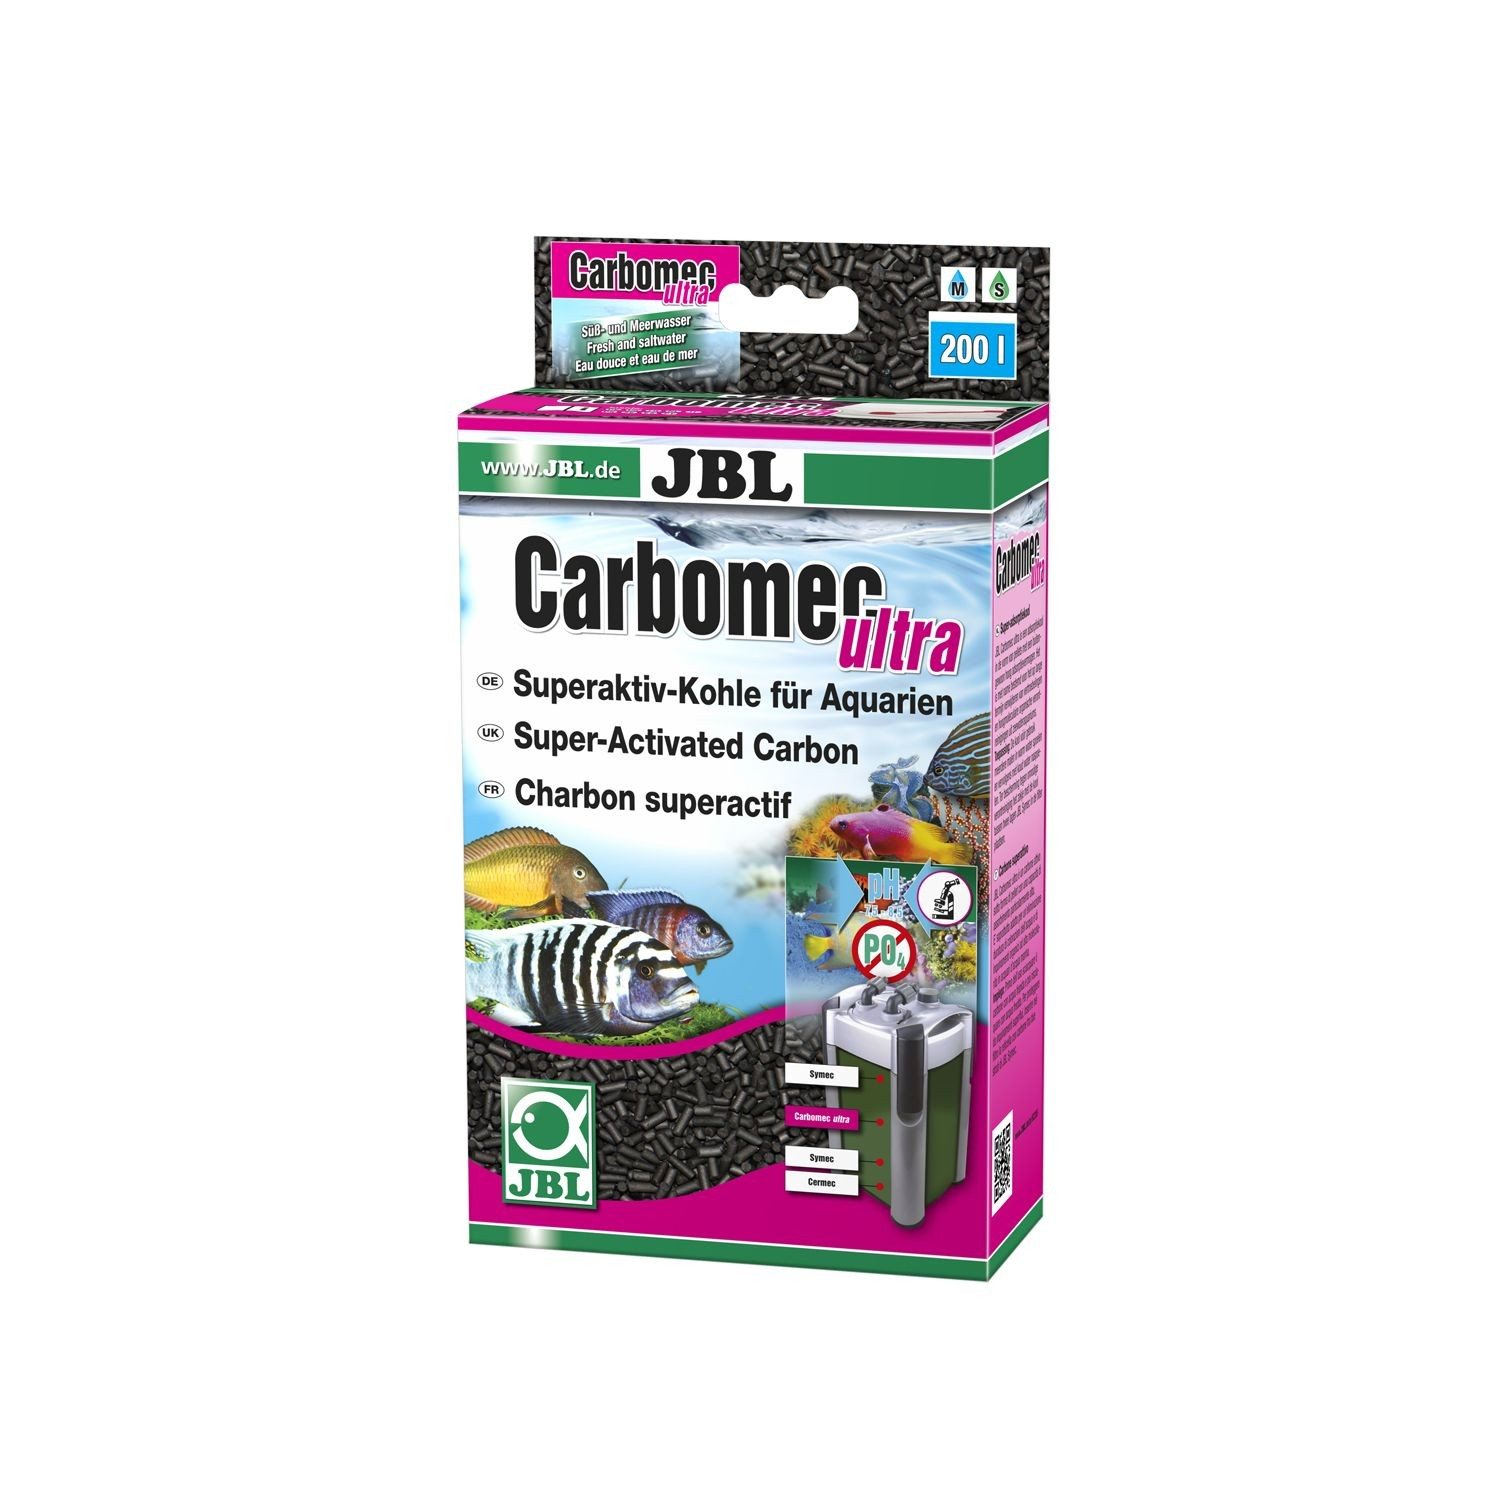 JBL Carbomec Ultra carvão super activo para aquário